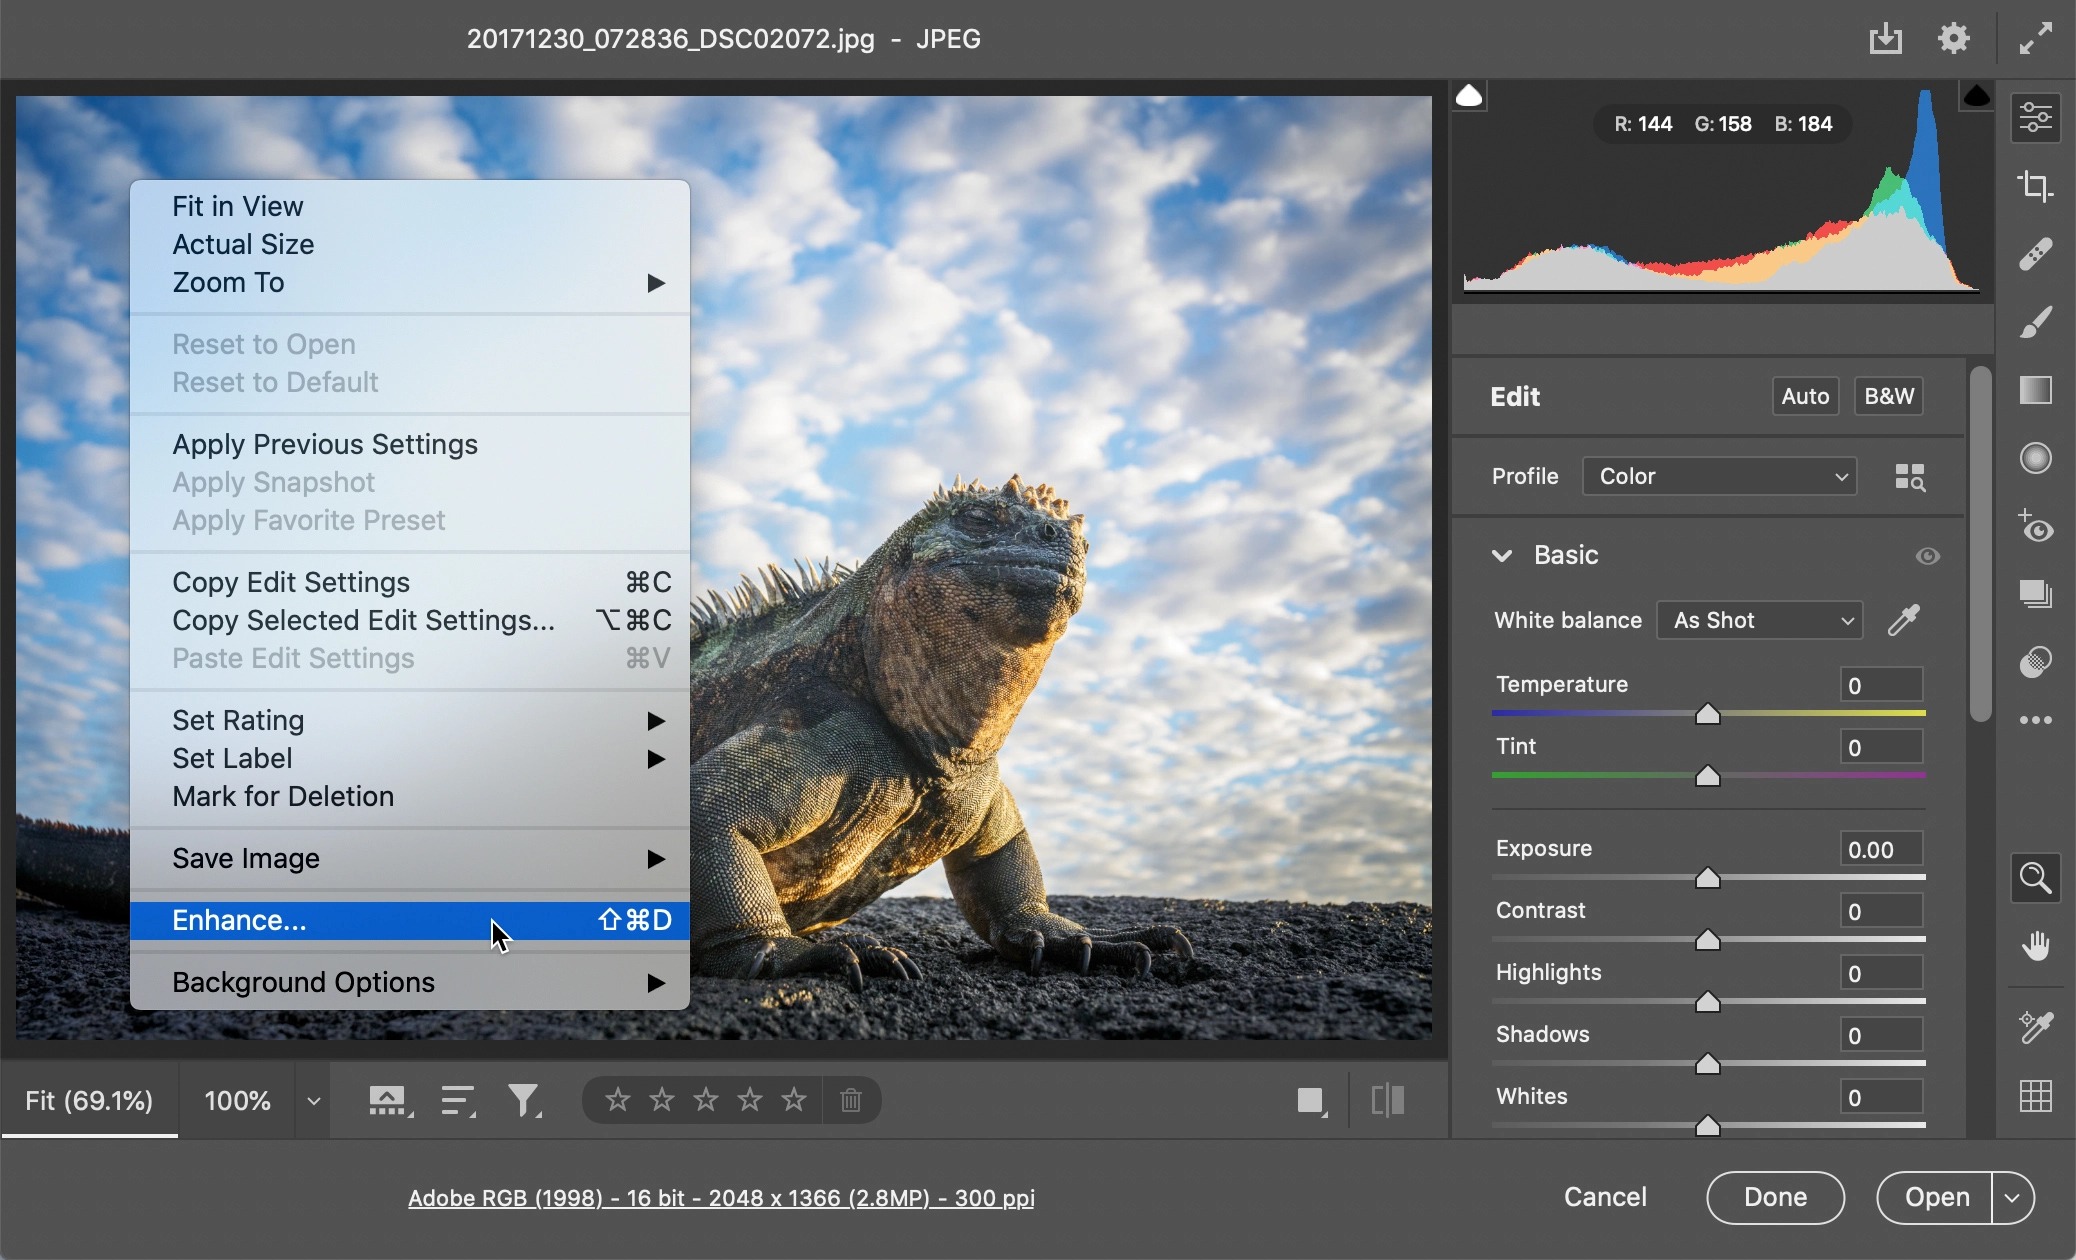 Adobe giới thiệu Photoshop hỗ trợ gốc cho Apple Silicon và tính năng Super Resolution mới